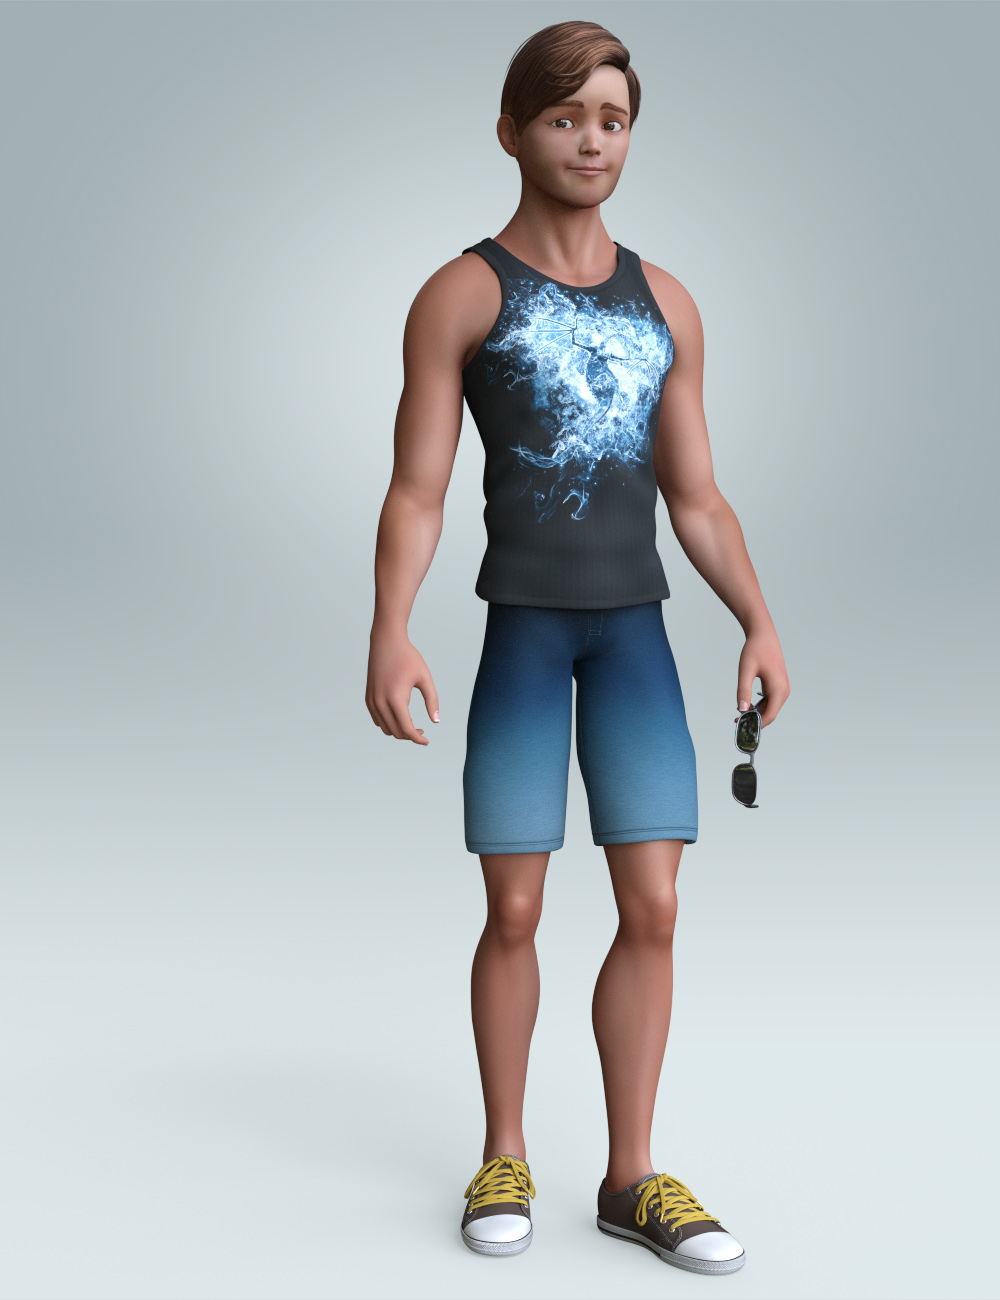 Stylized Matt Bundle for Genesis 3 Male(s) by: 3D Universe, 3D Models by Daz 3D